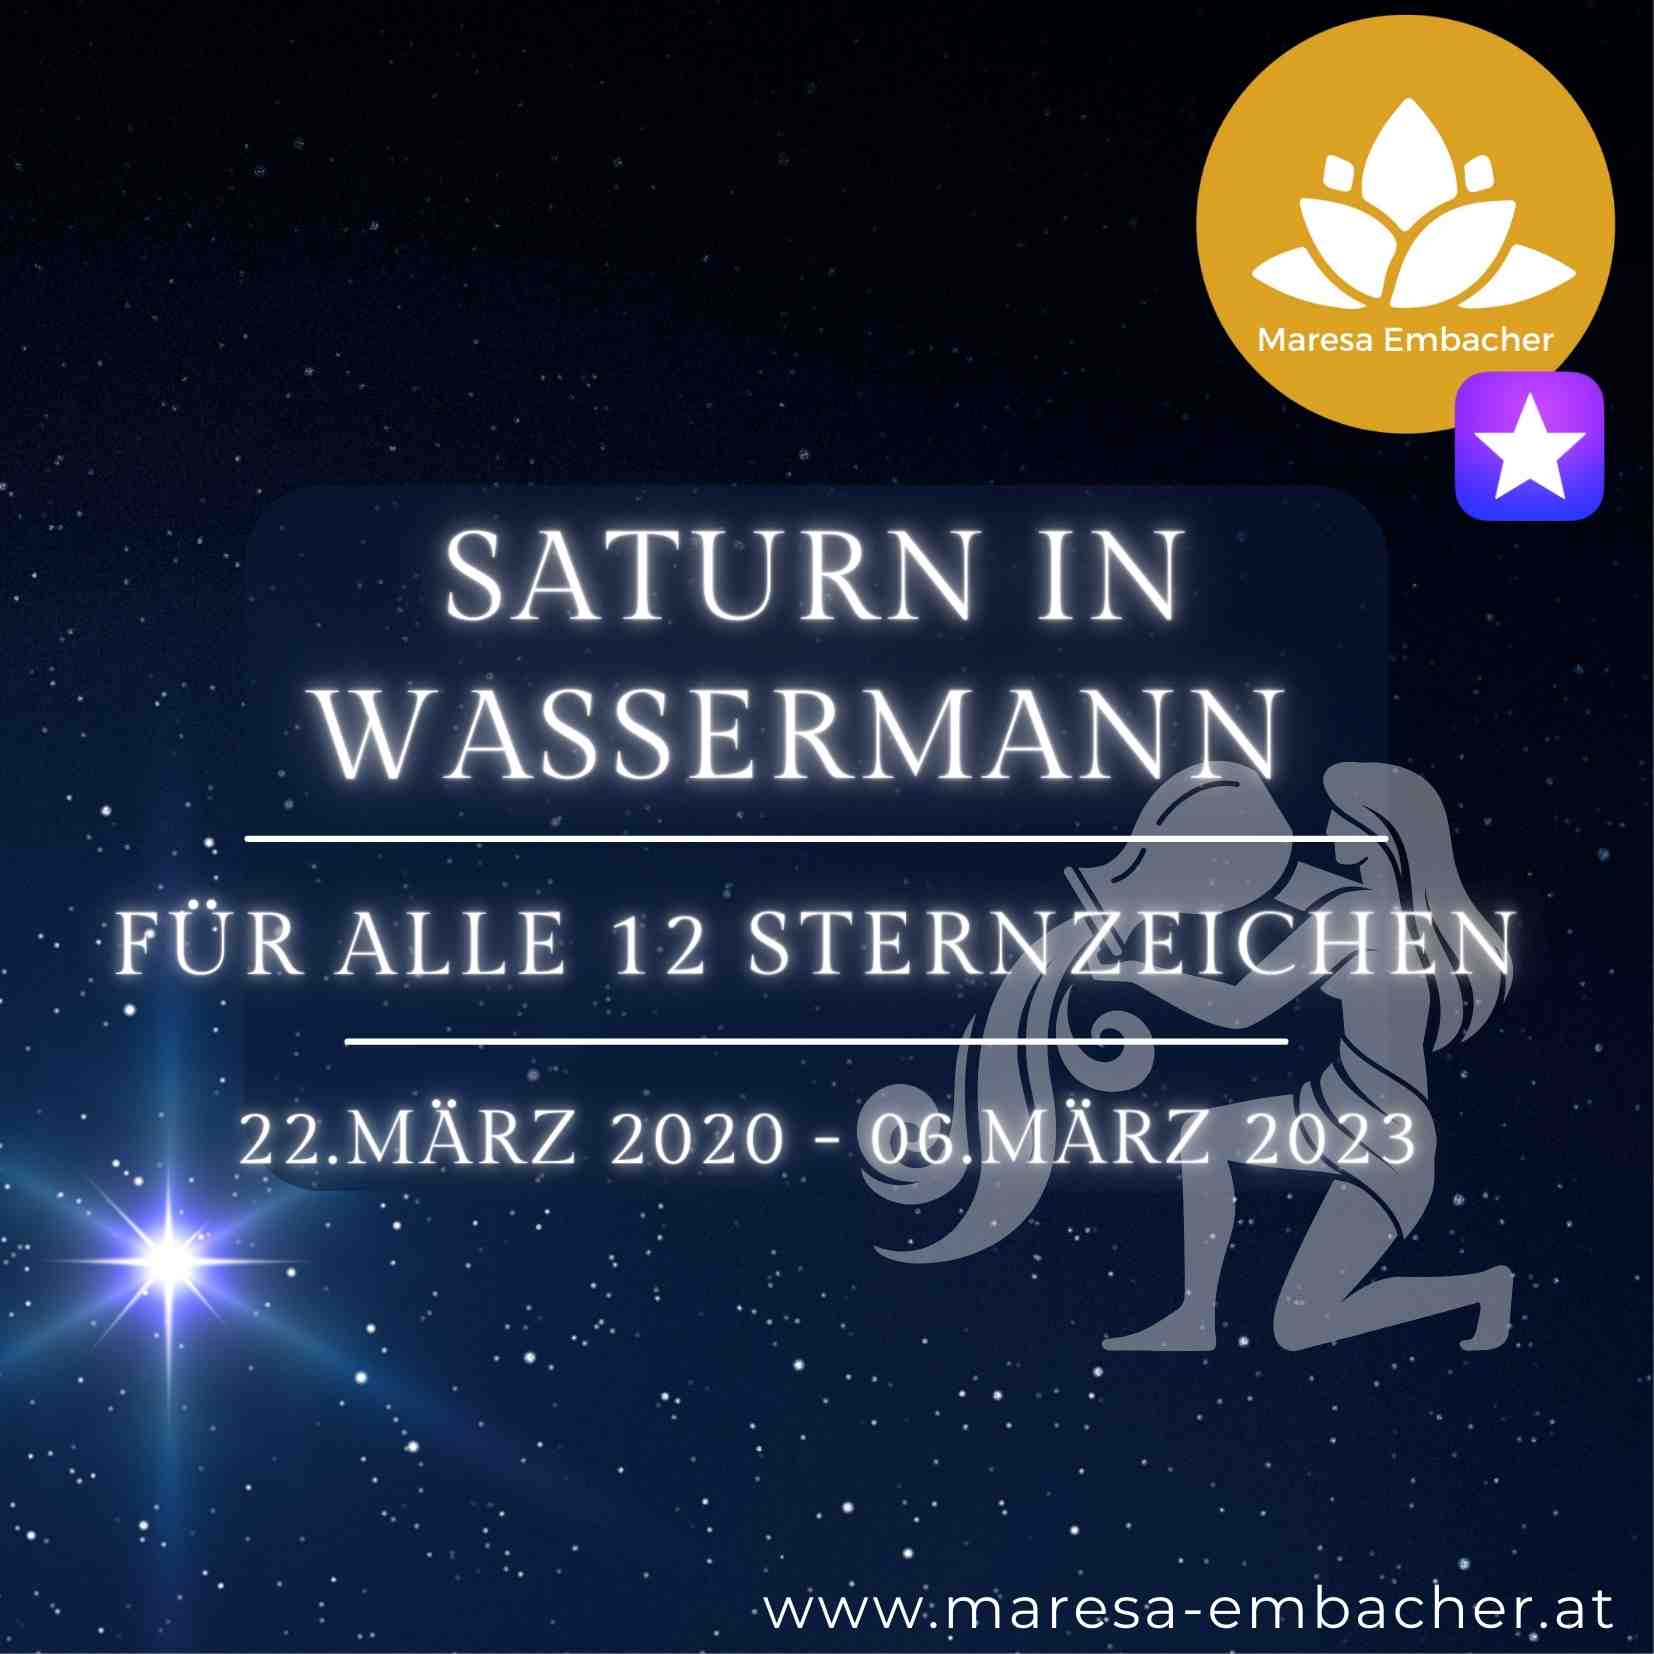 Saturn in Wassermann - Maresa Embacher